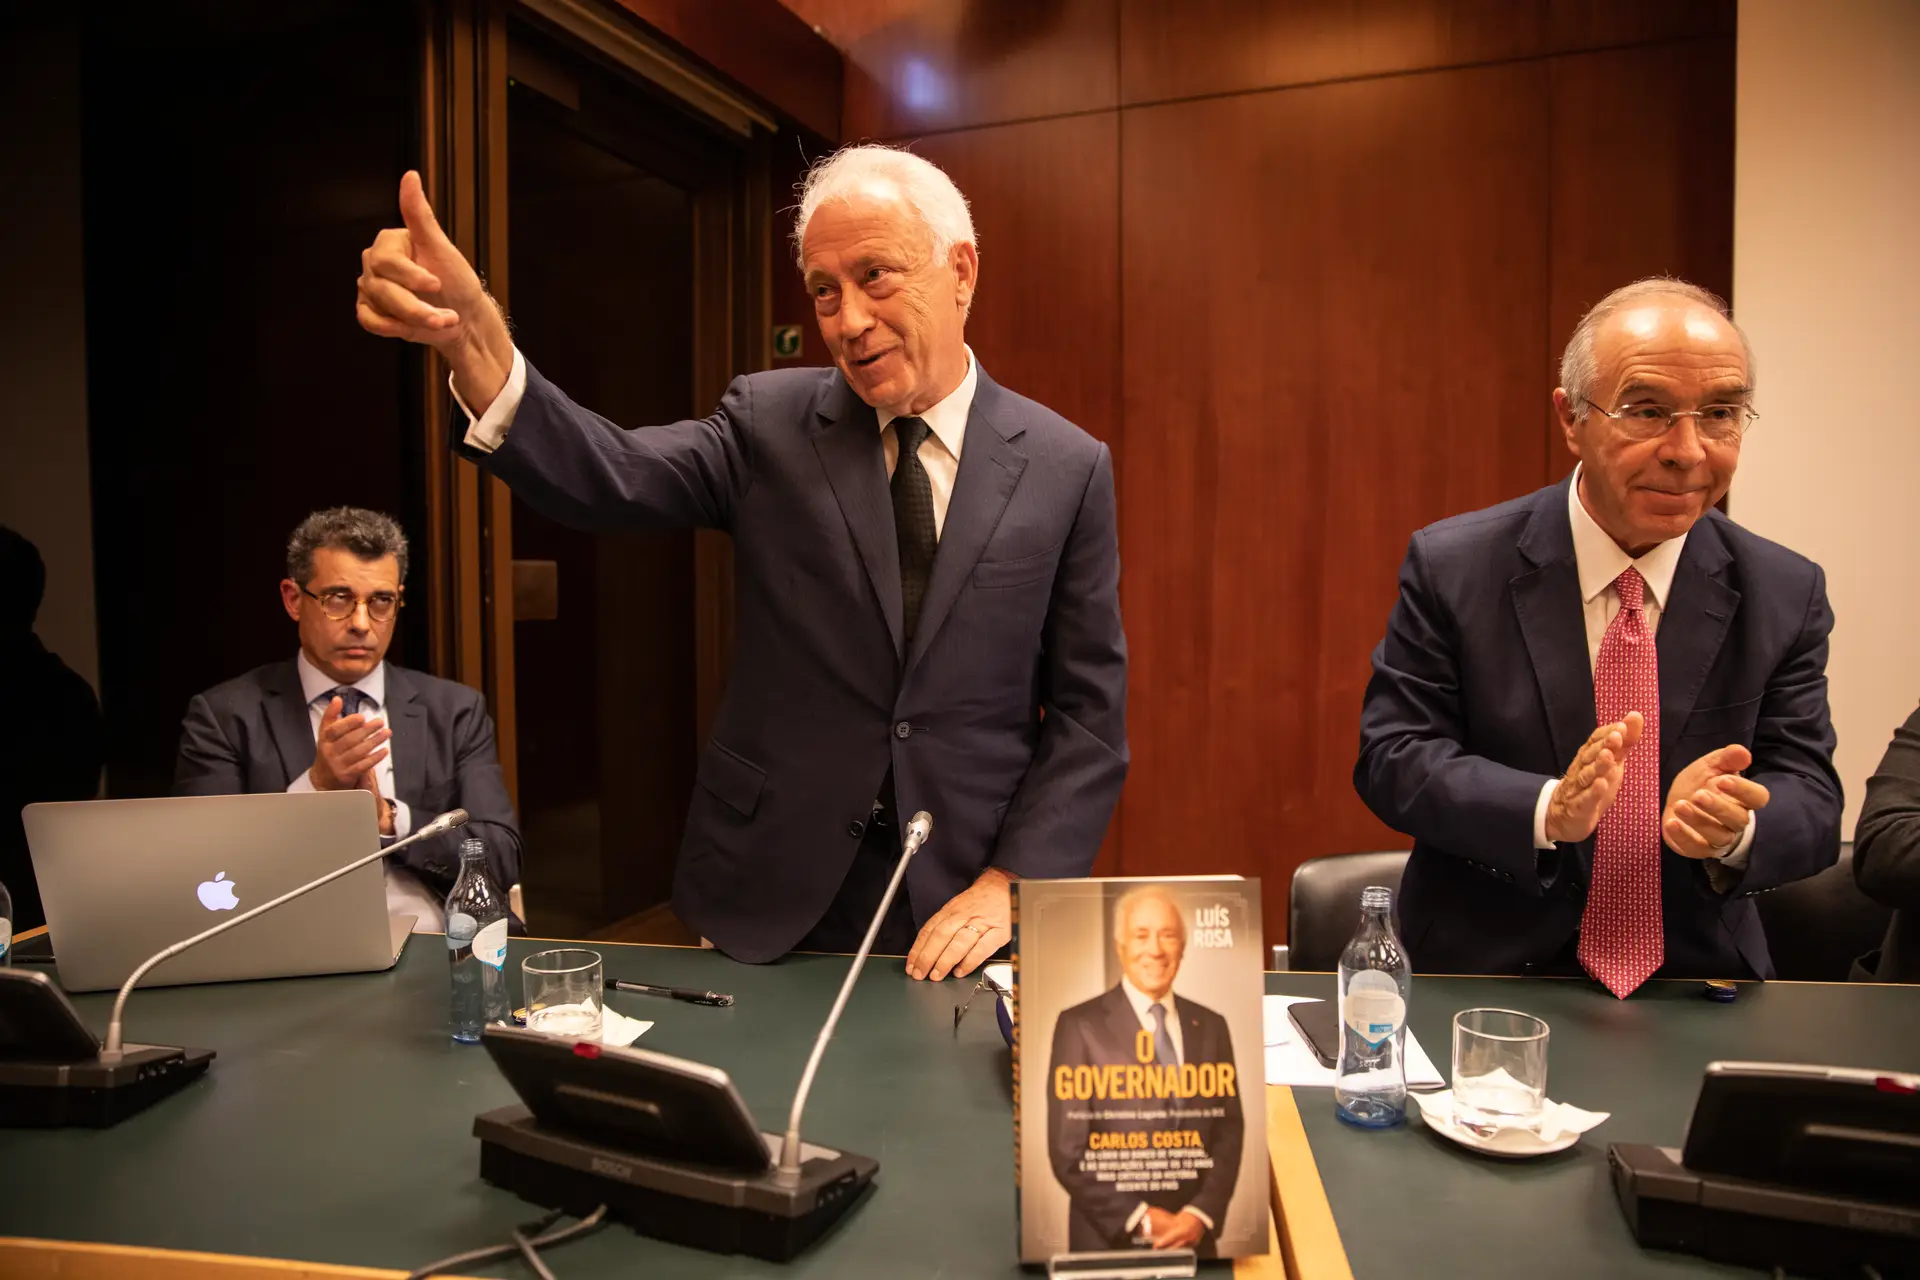 Lançamento do livro de Luís Rosa, sobre Carlos Costa enquanto Governador do Banco de Portugal, na Fundação Calouste Gulbenkian, em Lisboa.